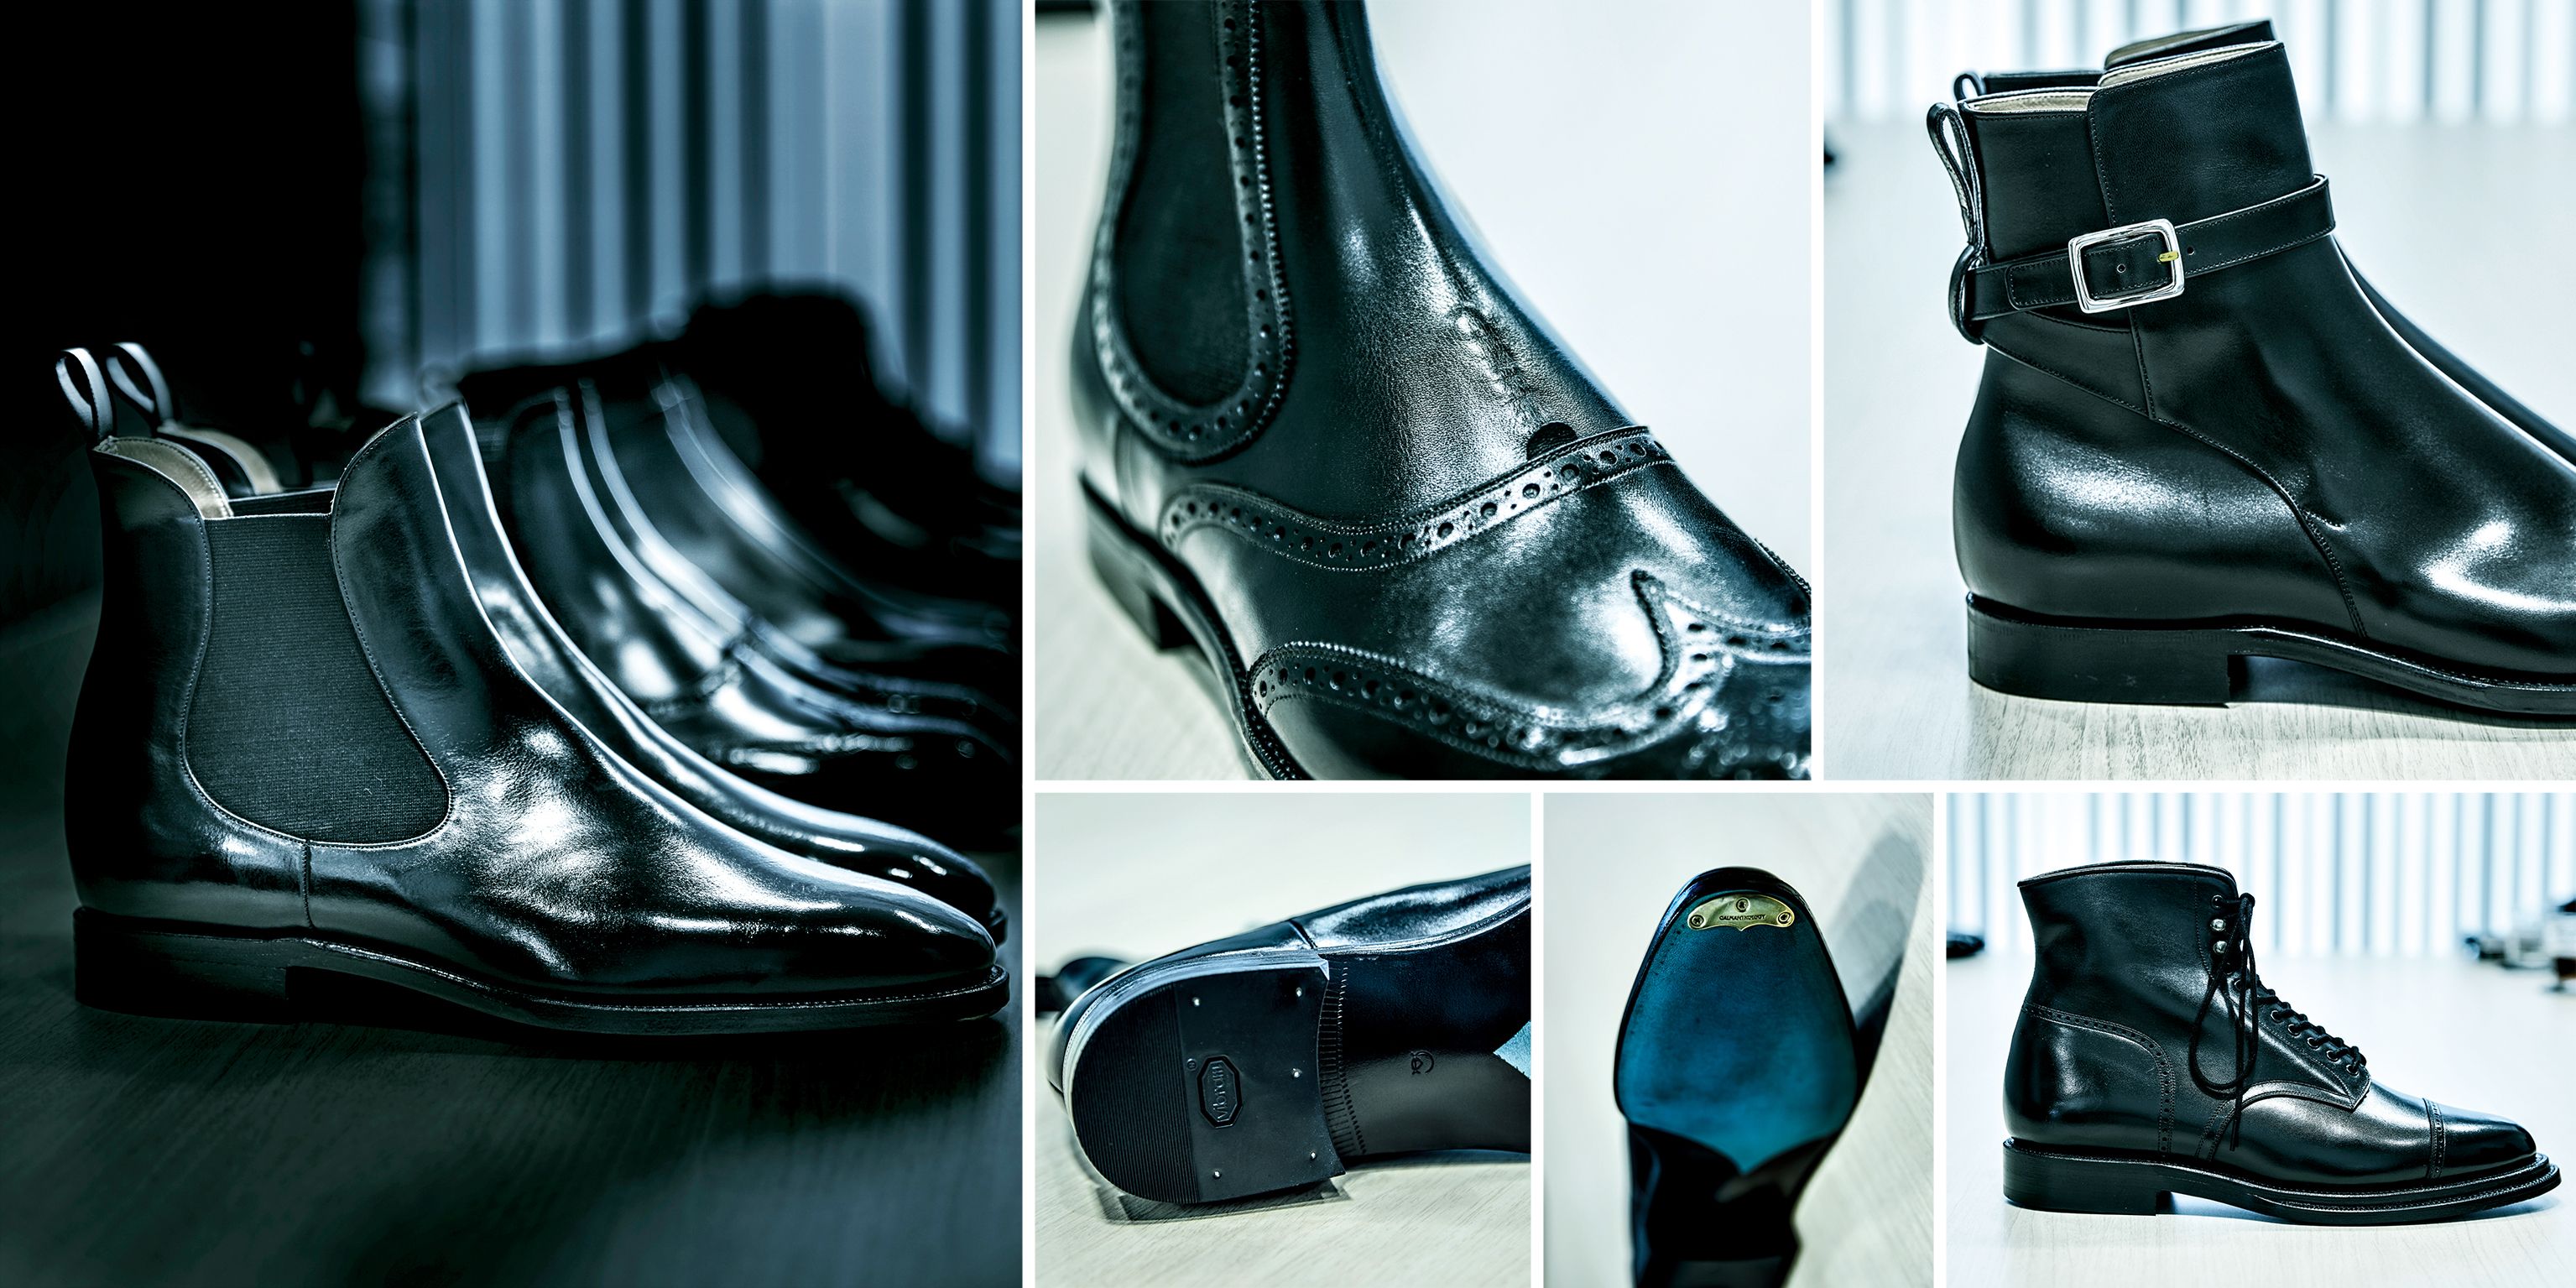 カルマンソロジー・デザイナーの金子さんが語る「黒ブーツの魅力」